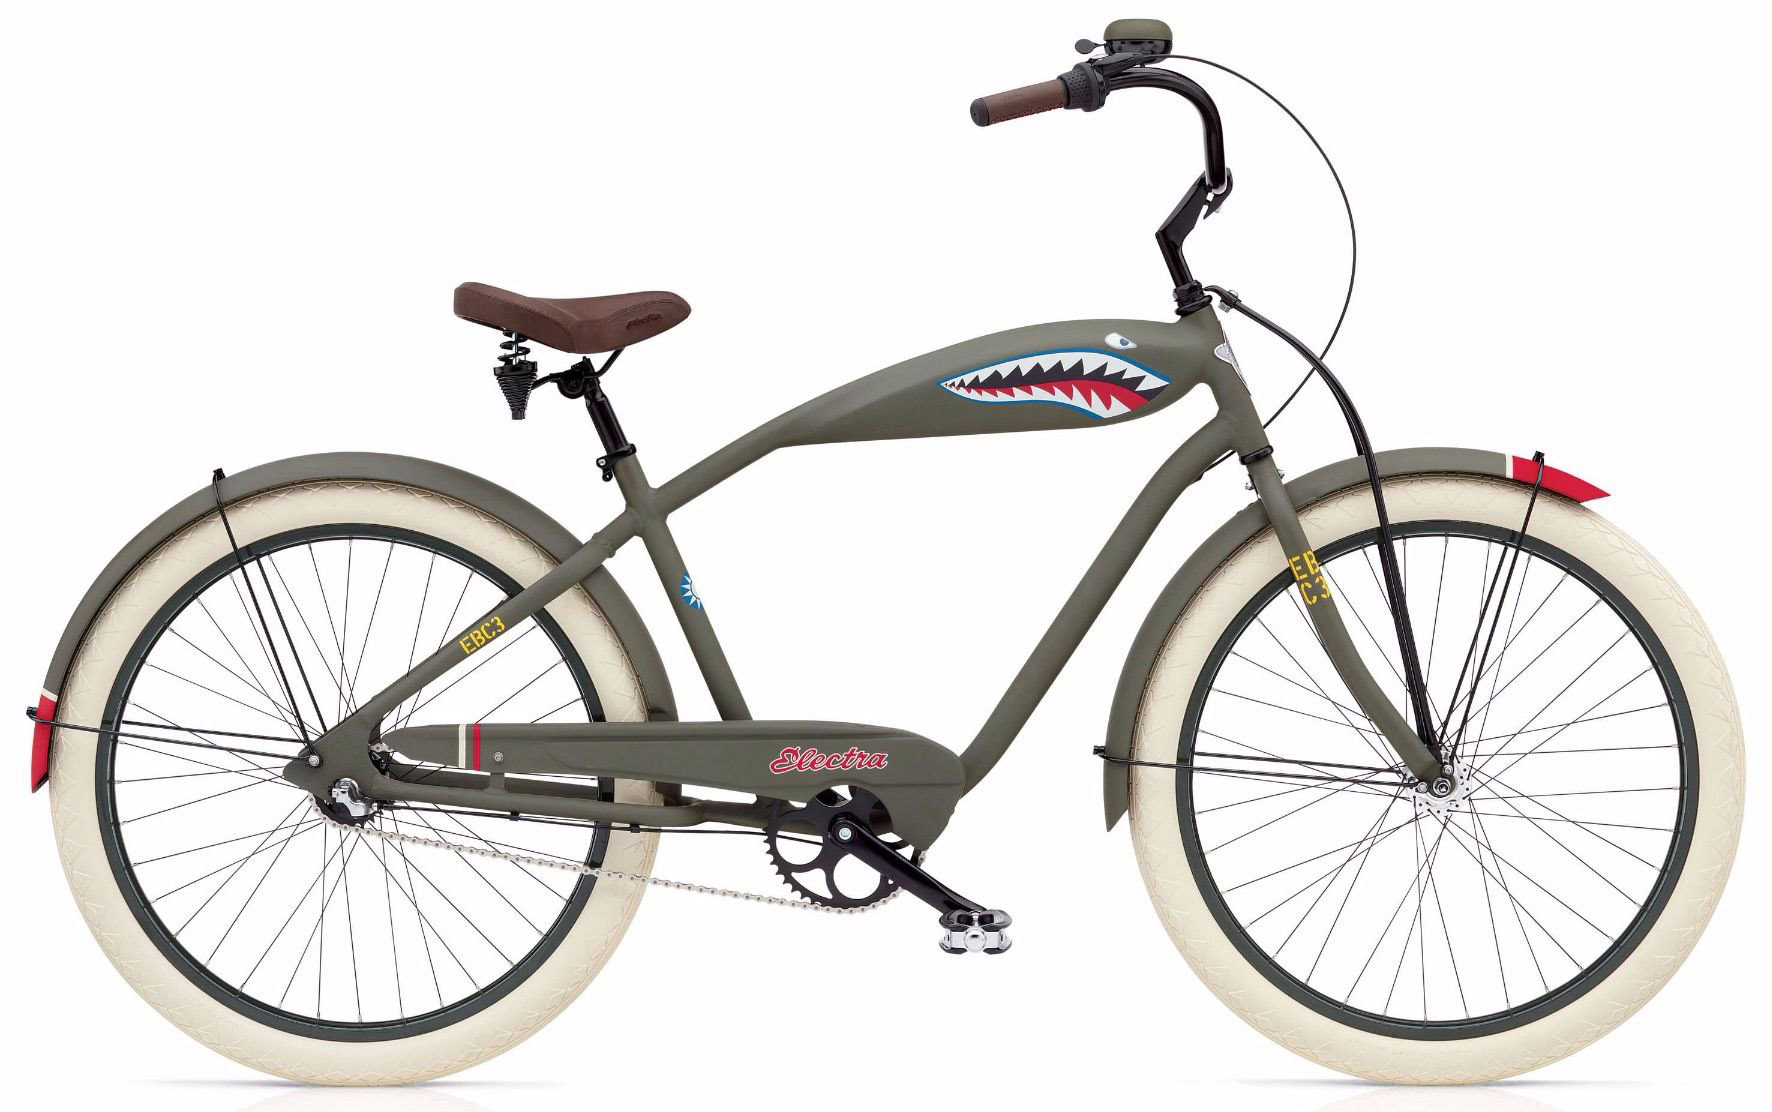  Велосипед Electra Tiger Shark 3i 2020